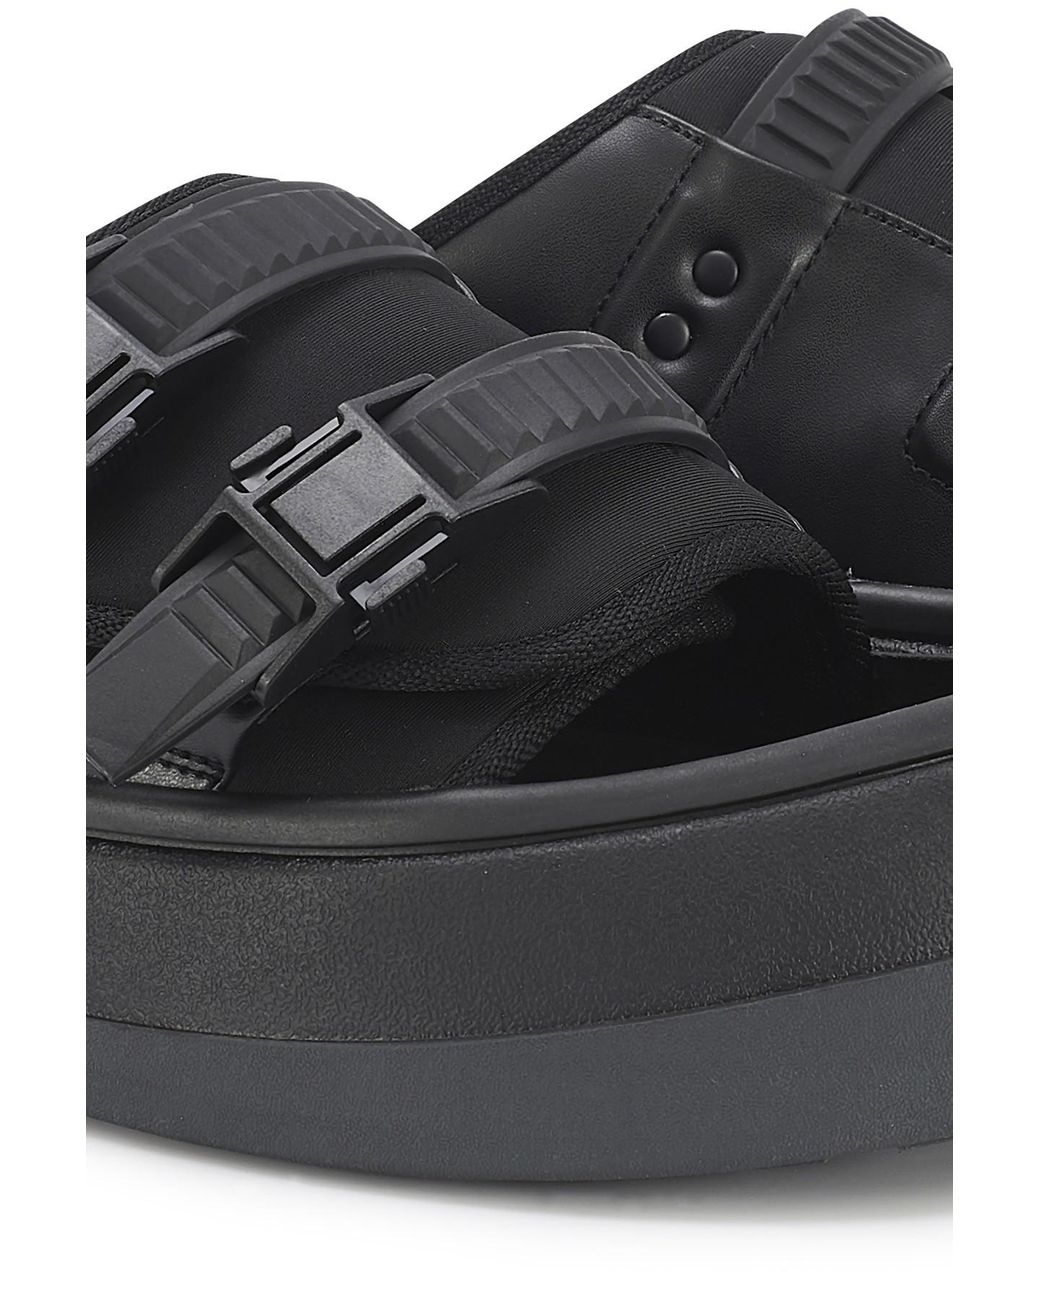 Eytys Capri Sandals in Black for Men - Lyst